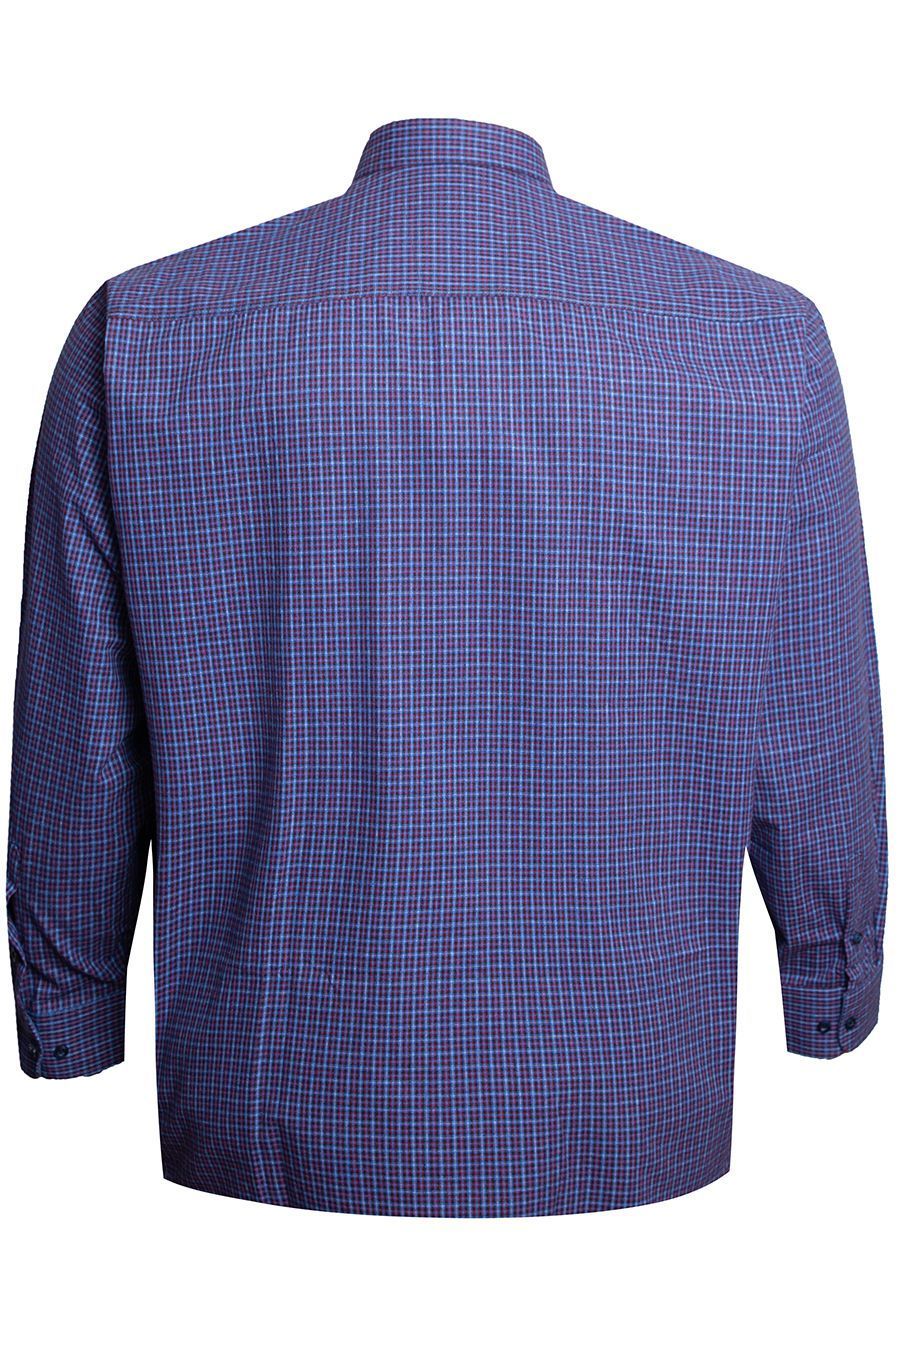 Рубашка Birindelli Синяя, индиго,красная клетка большого размера